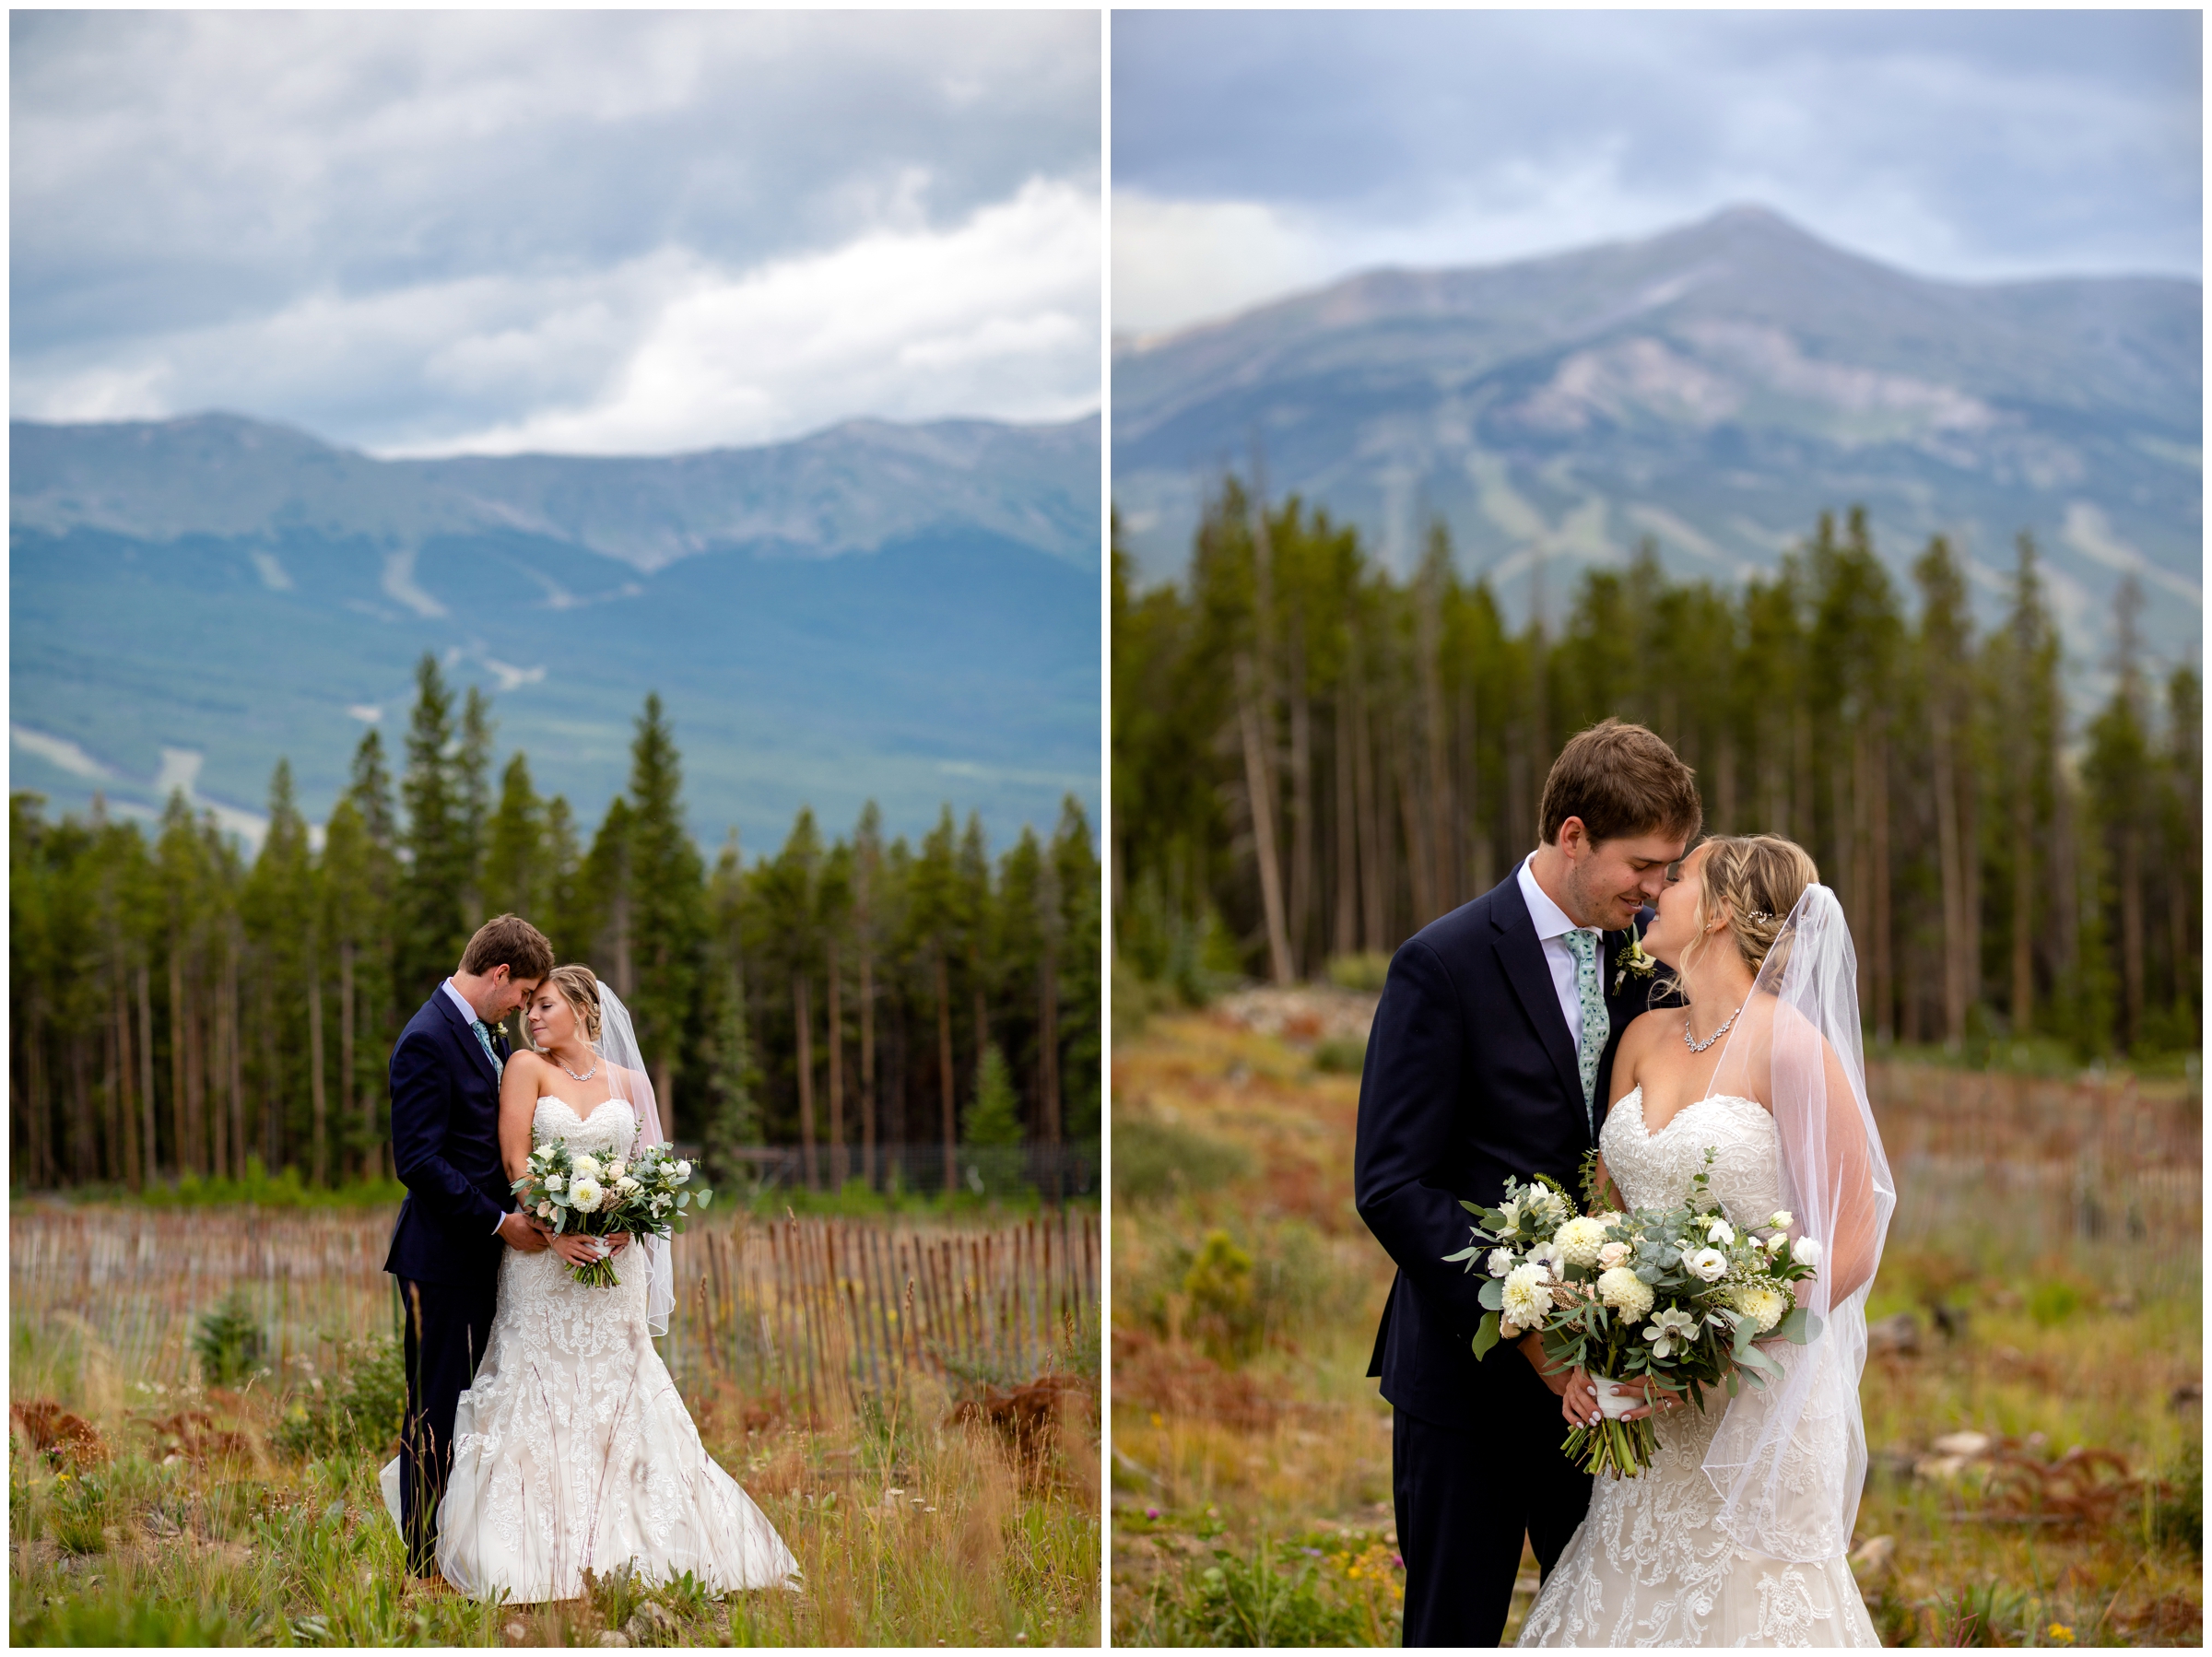 summer mountain wedding inspiration in Breckenridge Colorado  